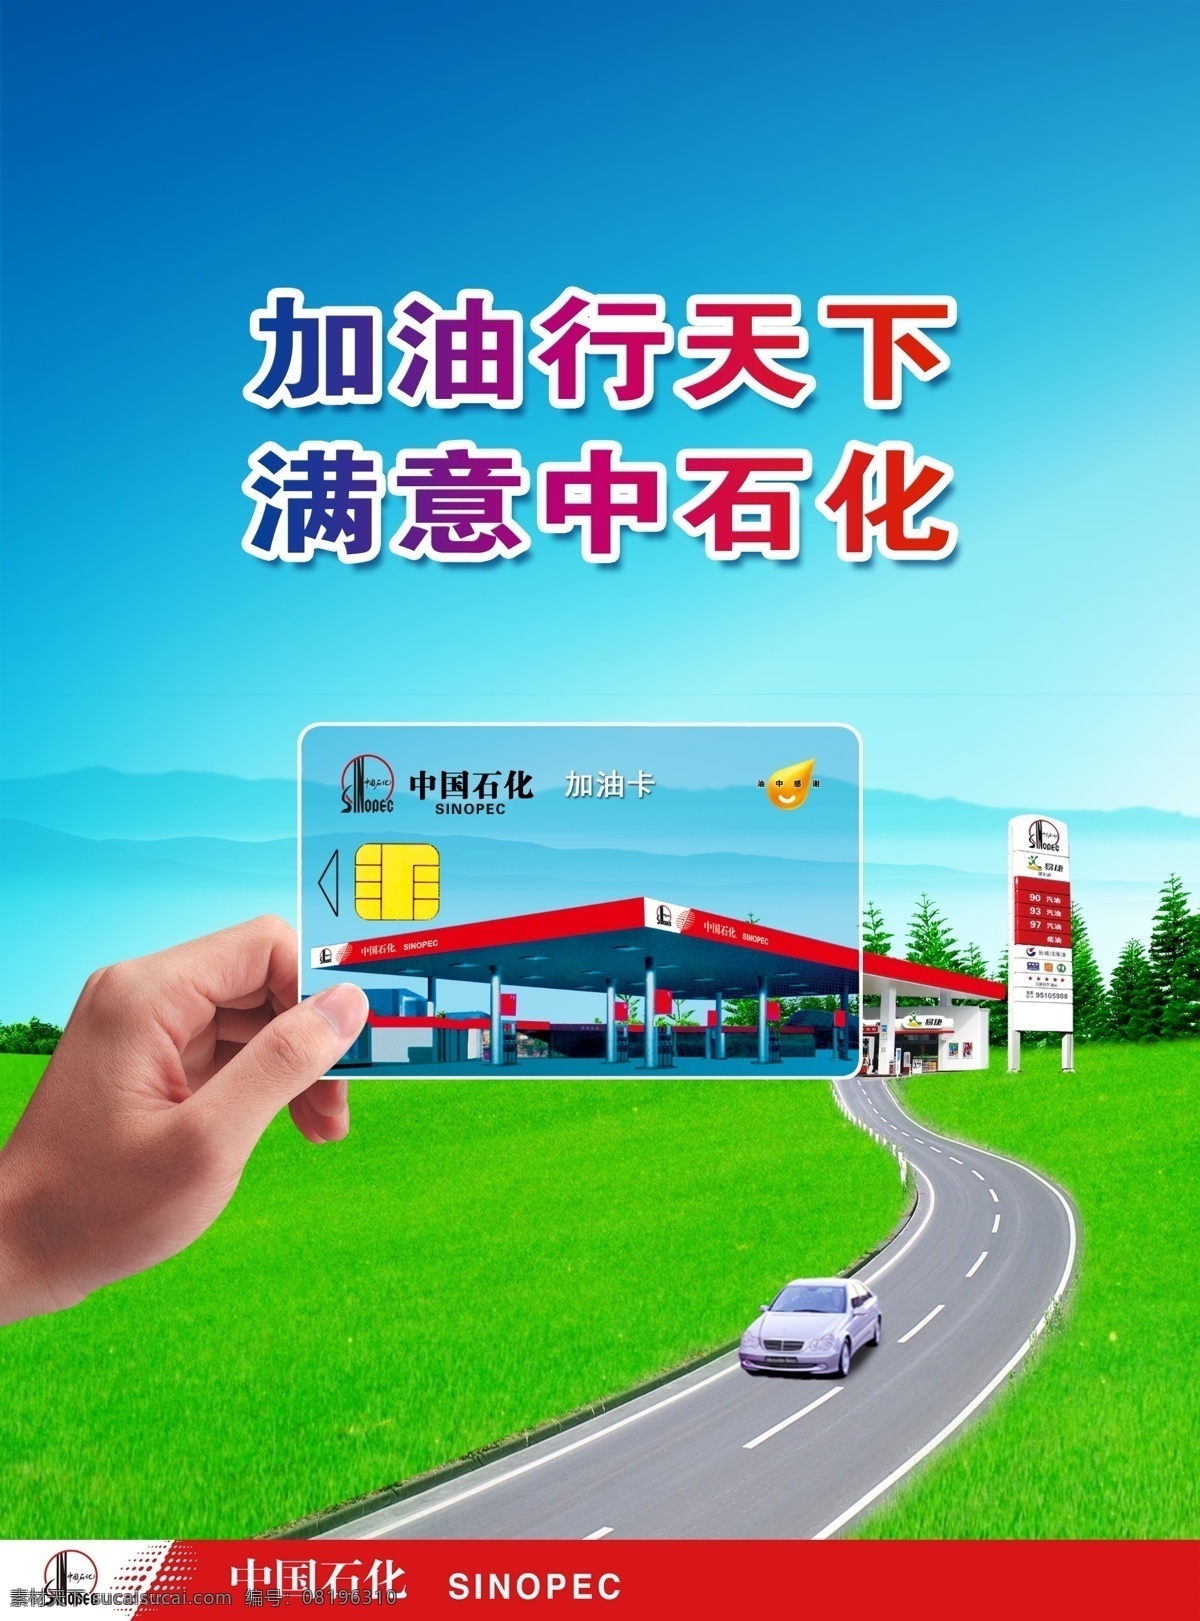 中国石化 杂志 持卡 篇 加油 卡 持卡篇 加油卡 充值卡 加油充值卡 个性定制 加油方便 广告设计模板 源文件